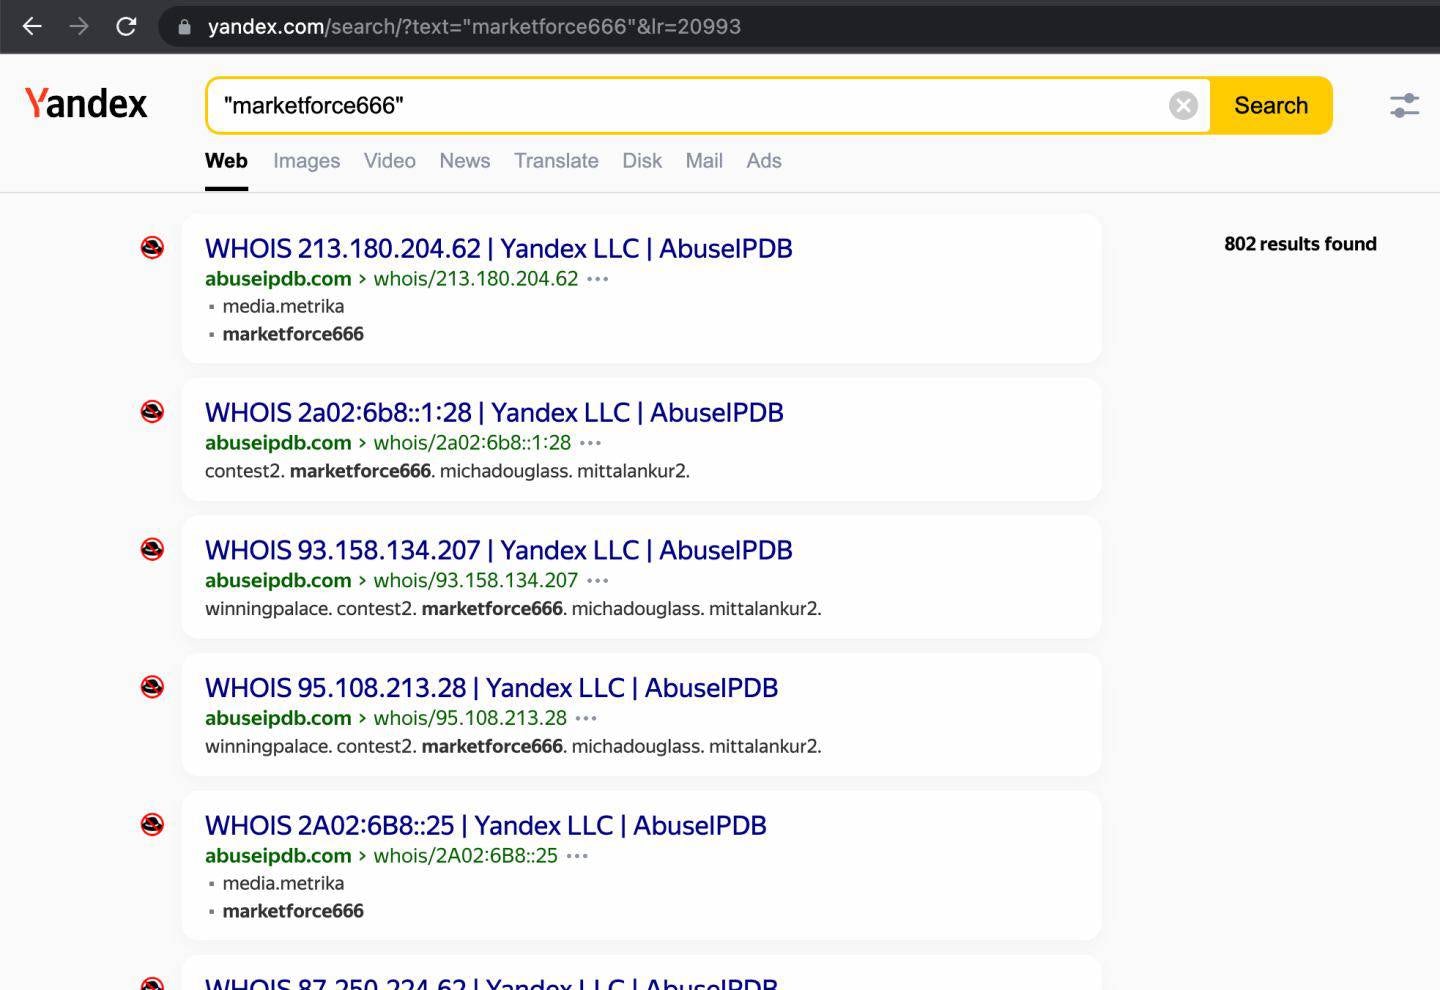 marketforce666 Yandex search engine results